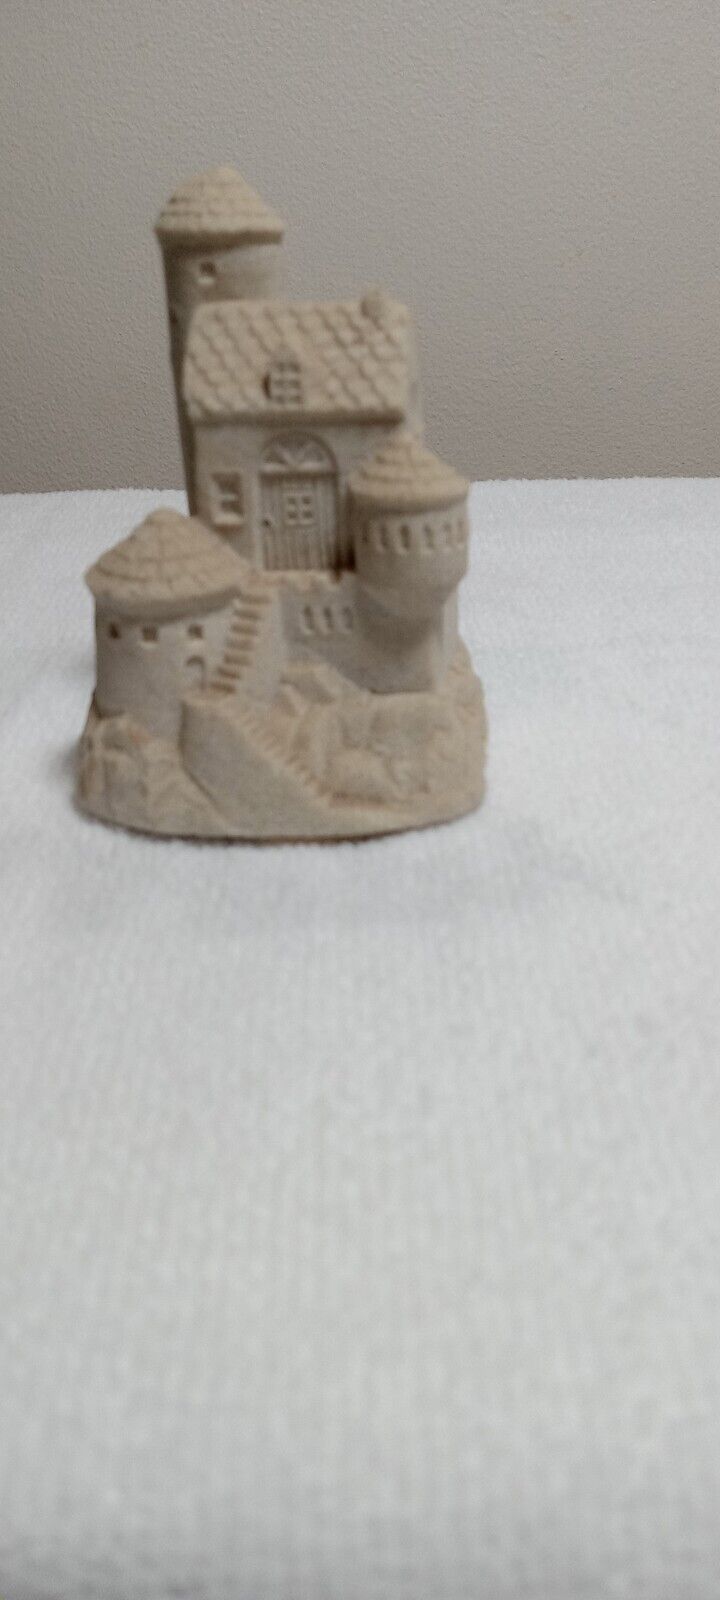 Mr. Sandman Sand Castle Sculpture 3.5x2.5x2.5